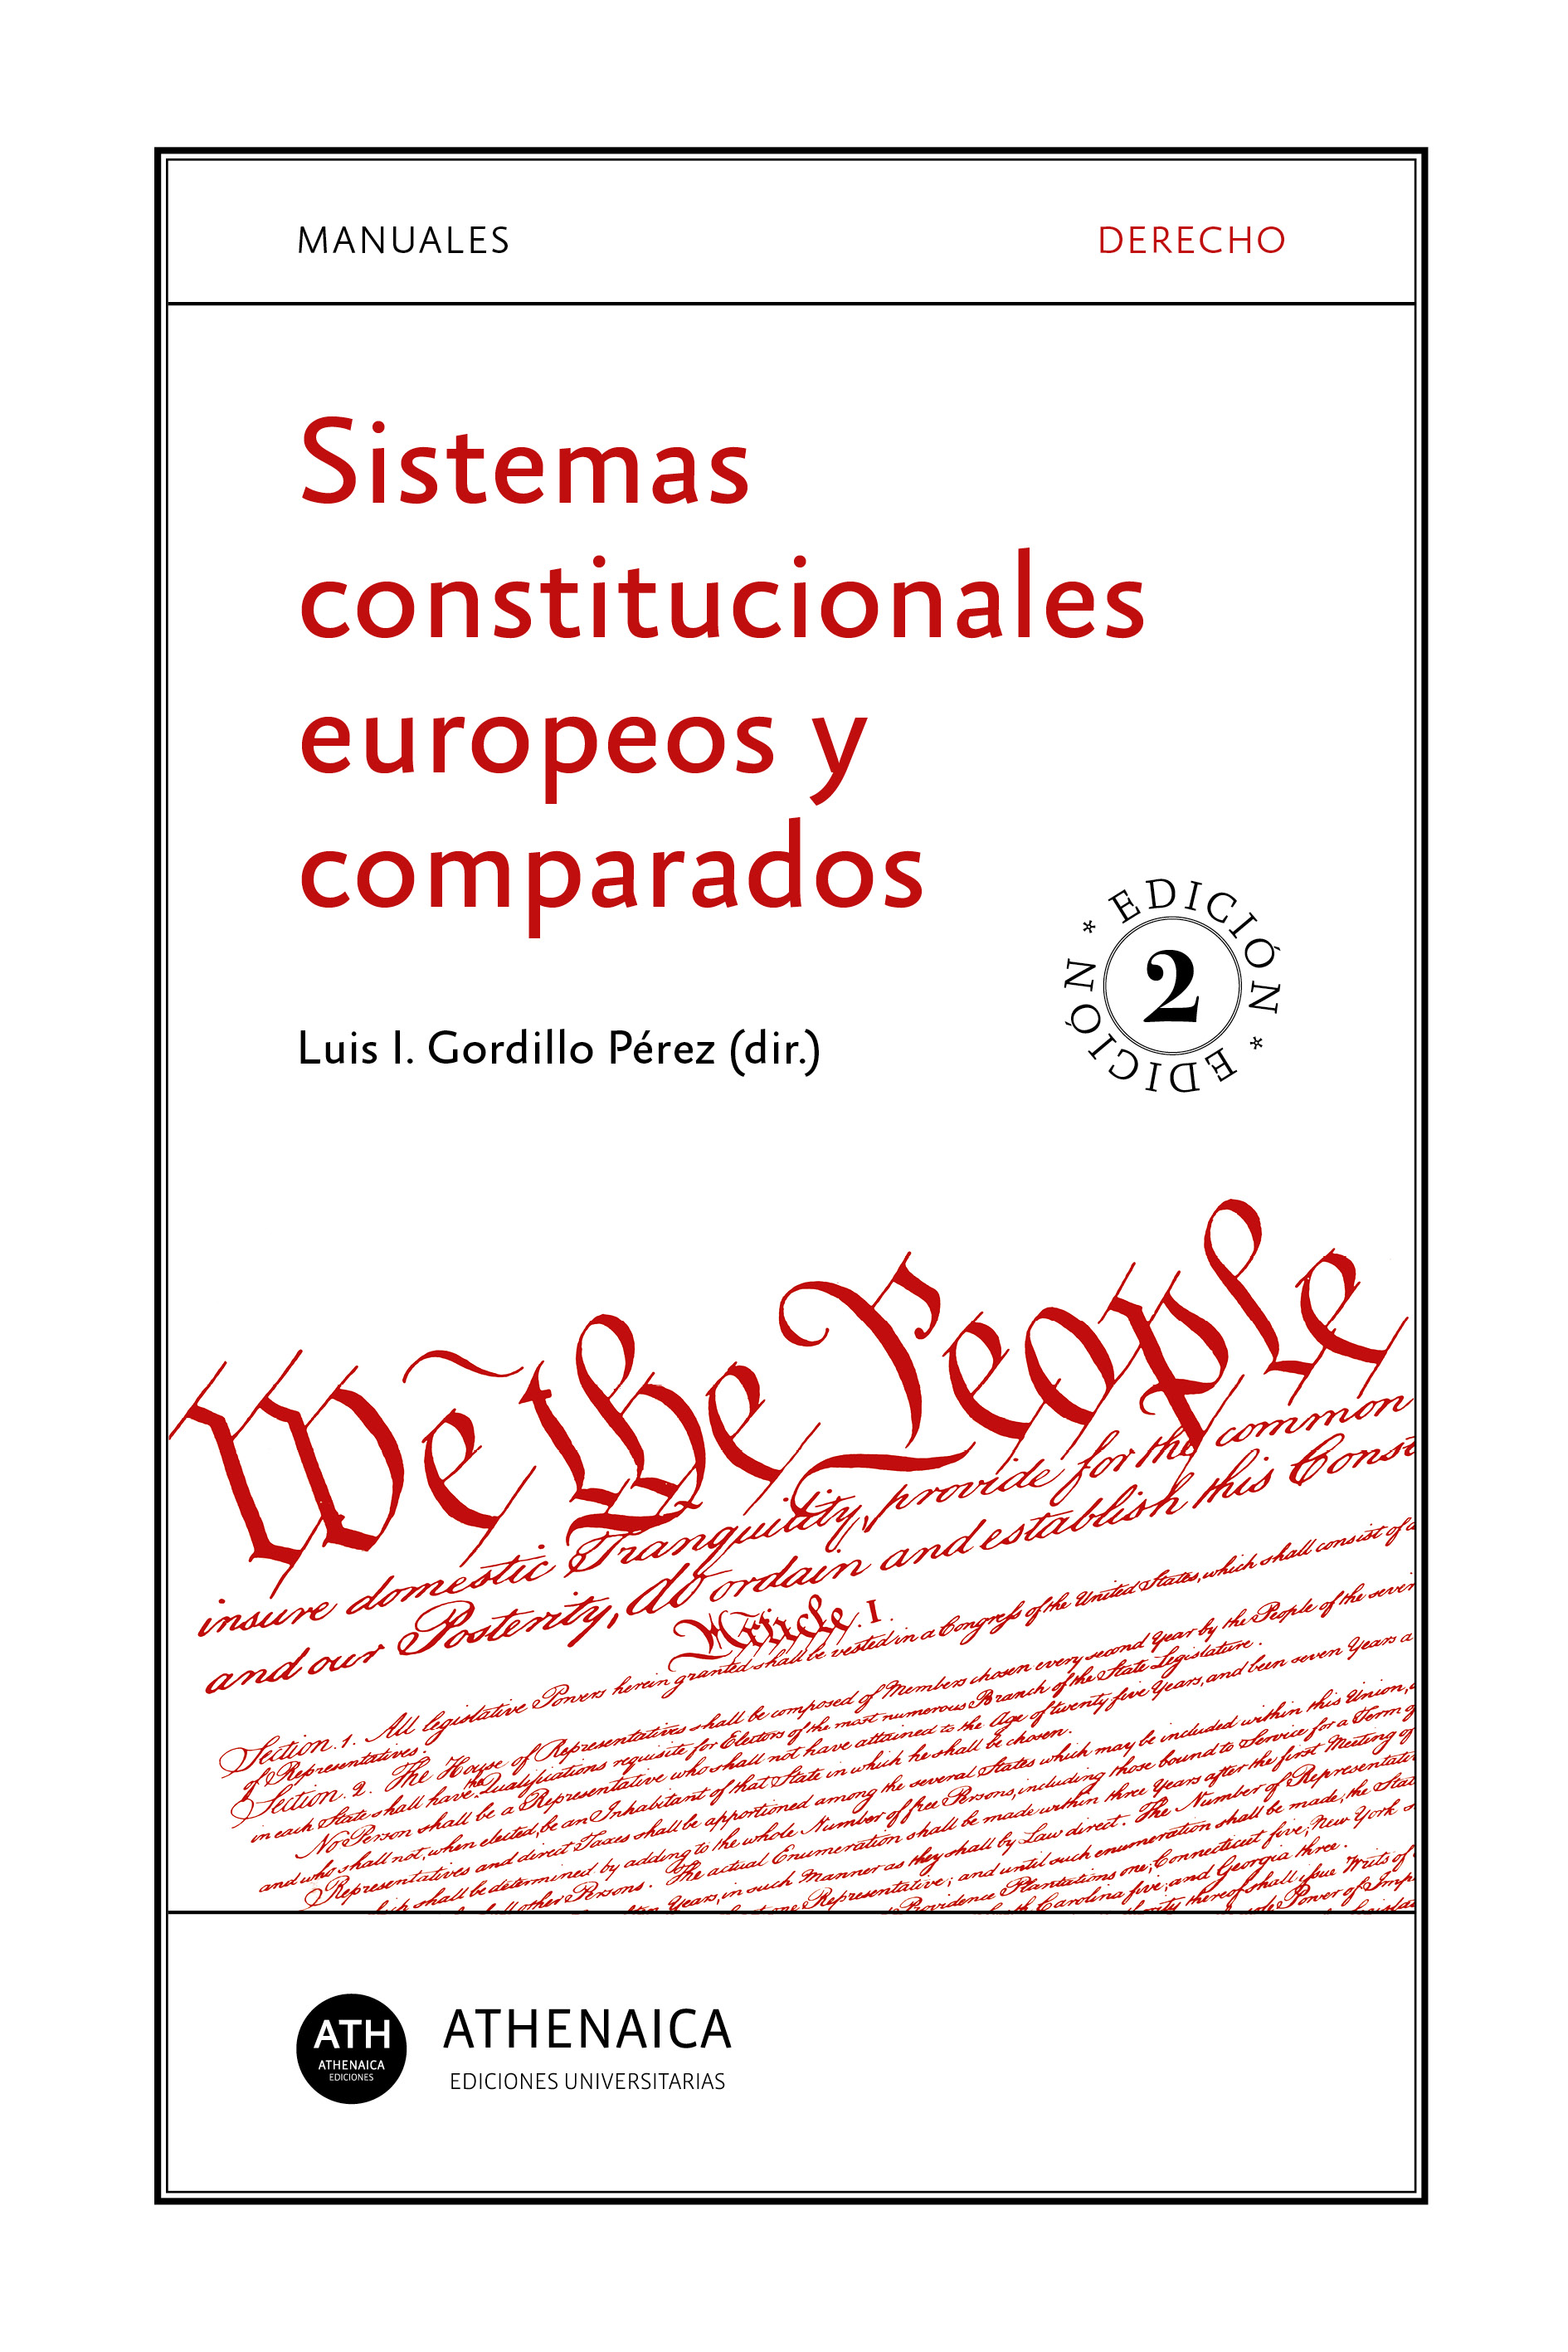 Imagen de portada del libro Sistemas constitucionales europeos y comparados.